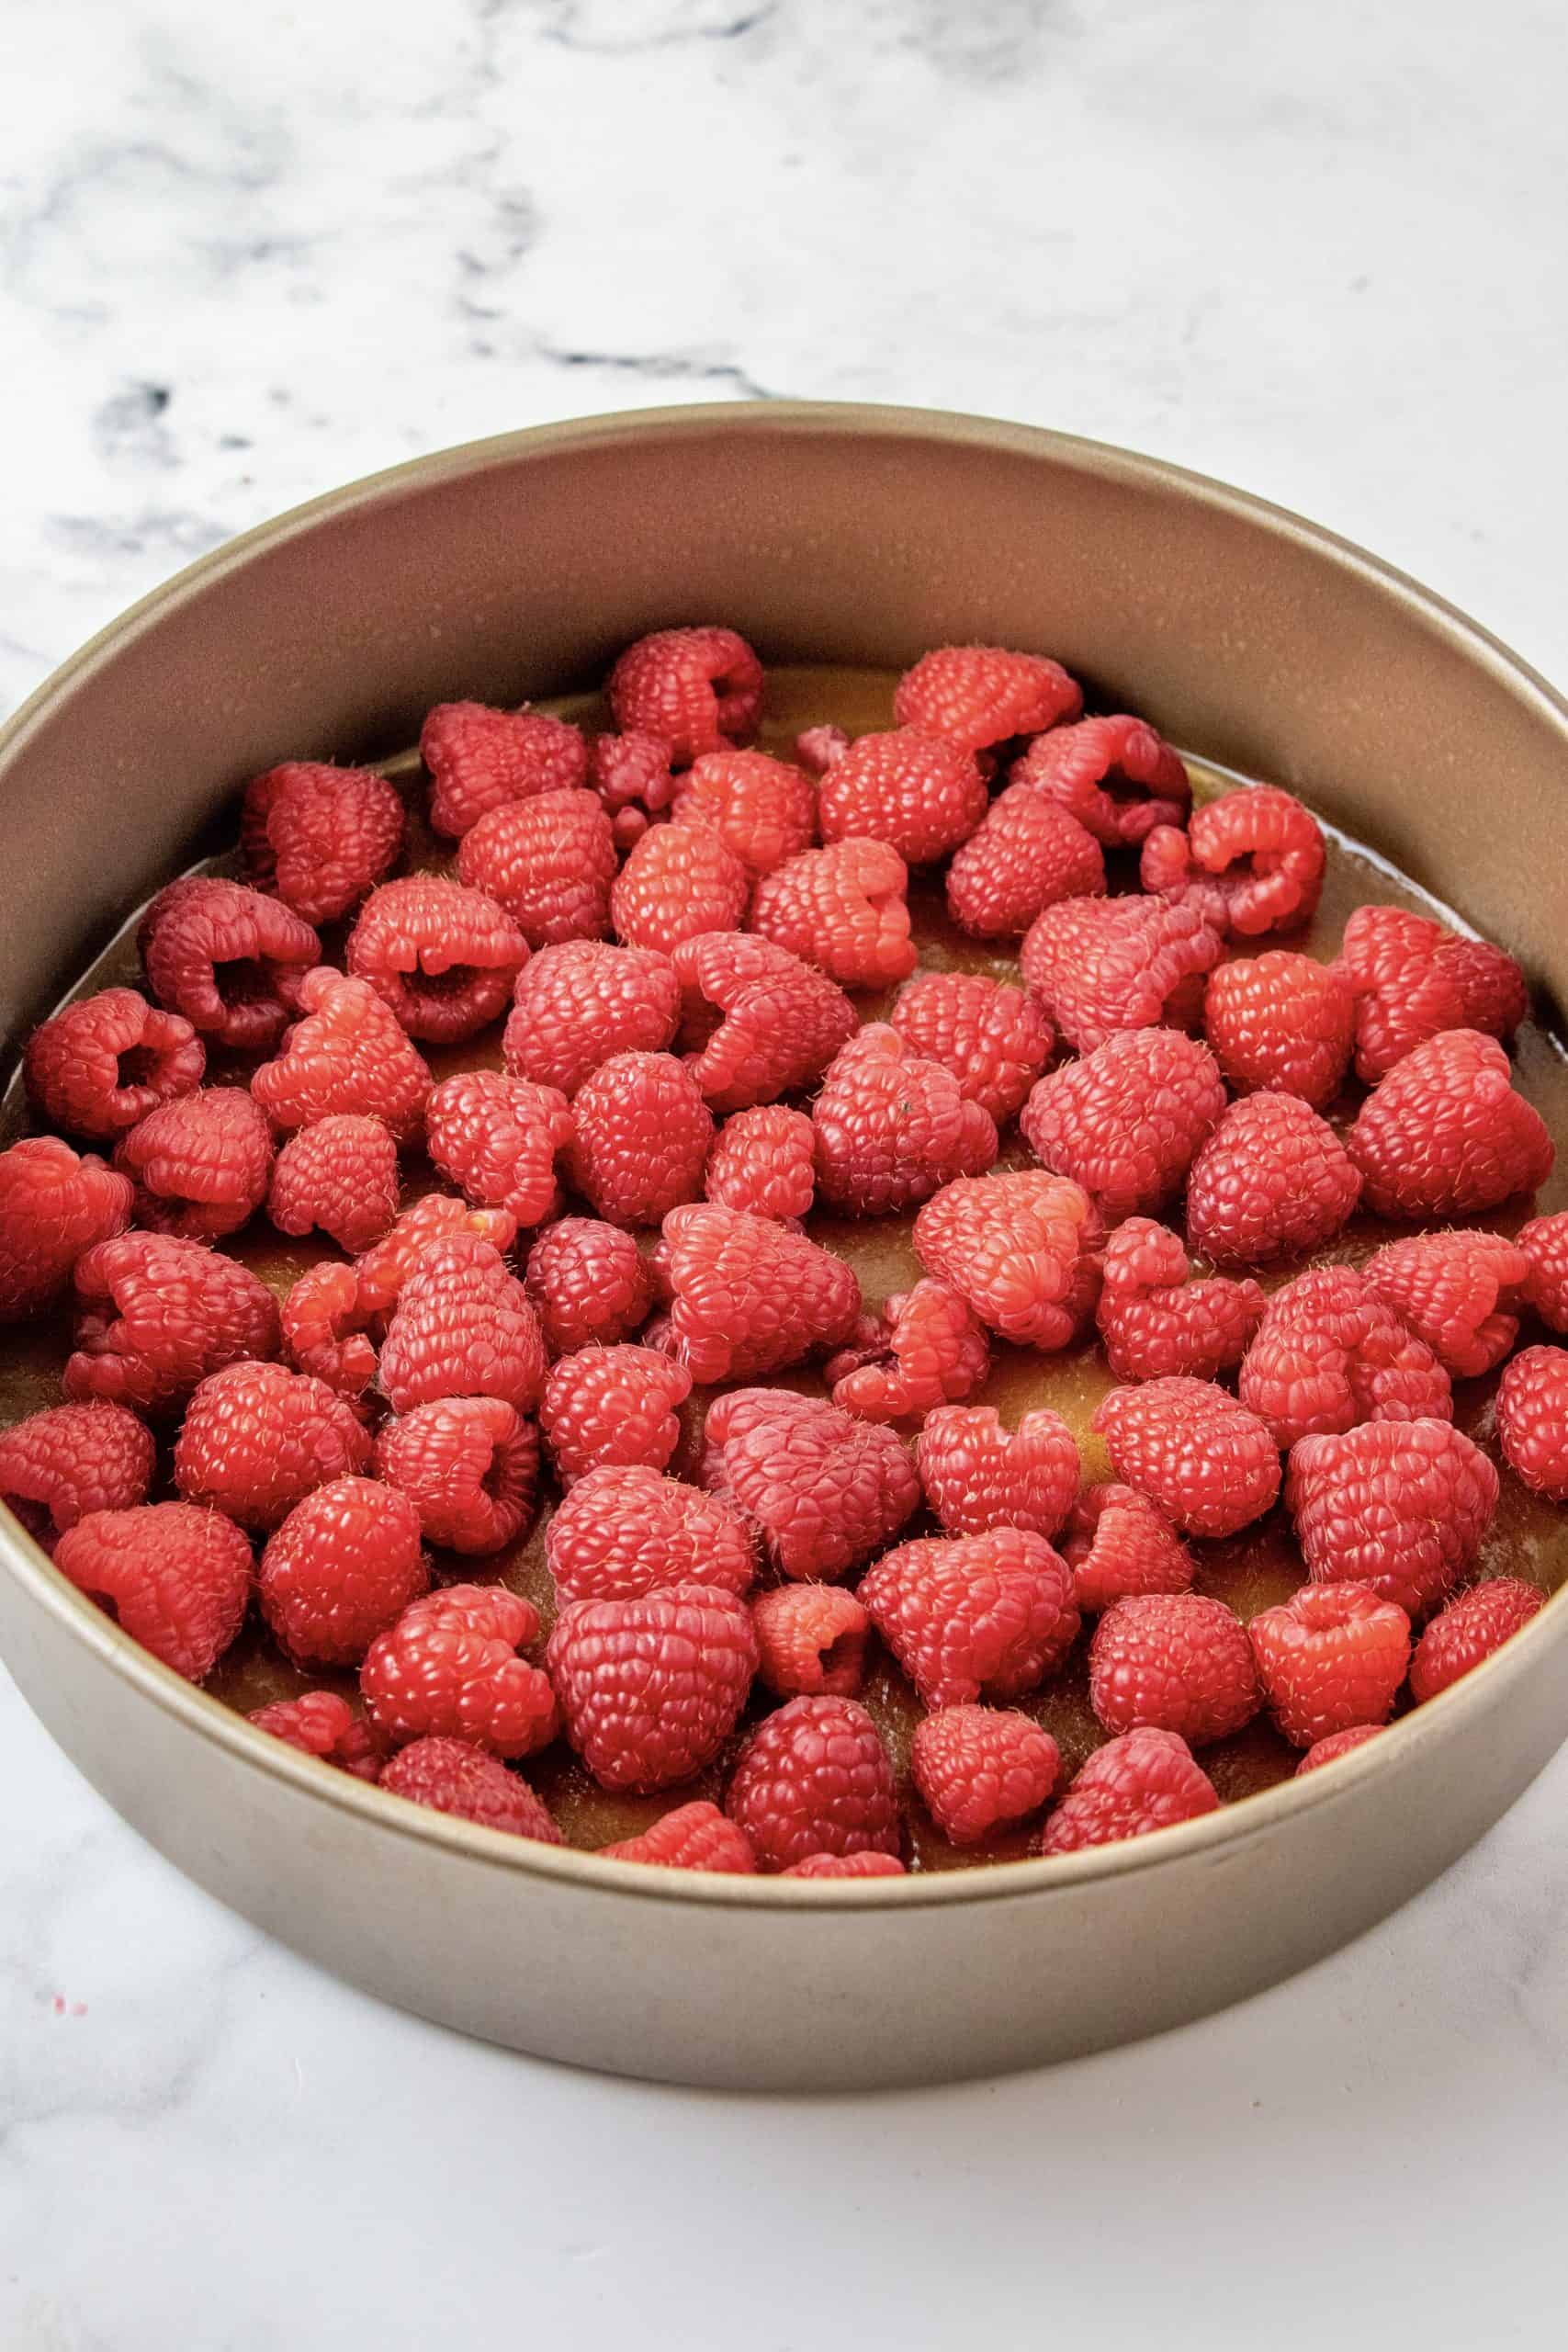 Raspberries on top of brown sugar mixture in pan.